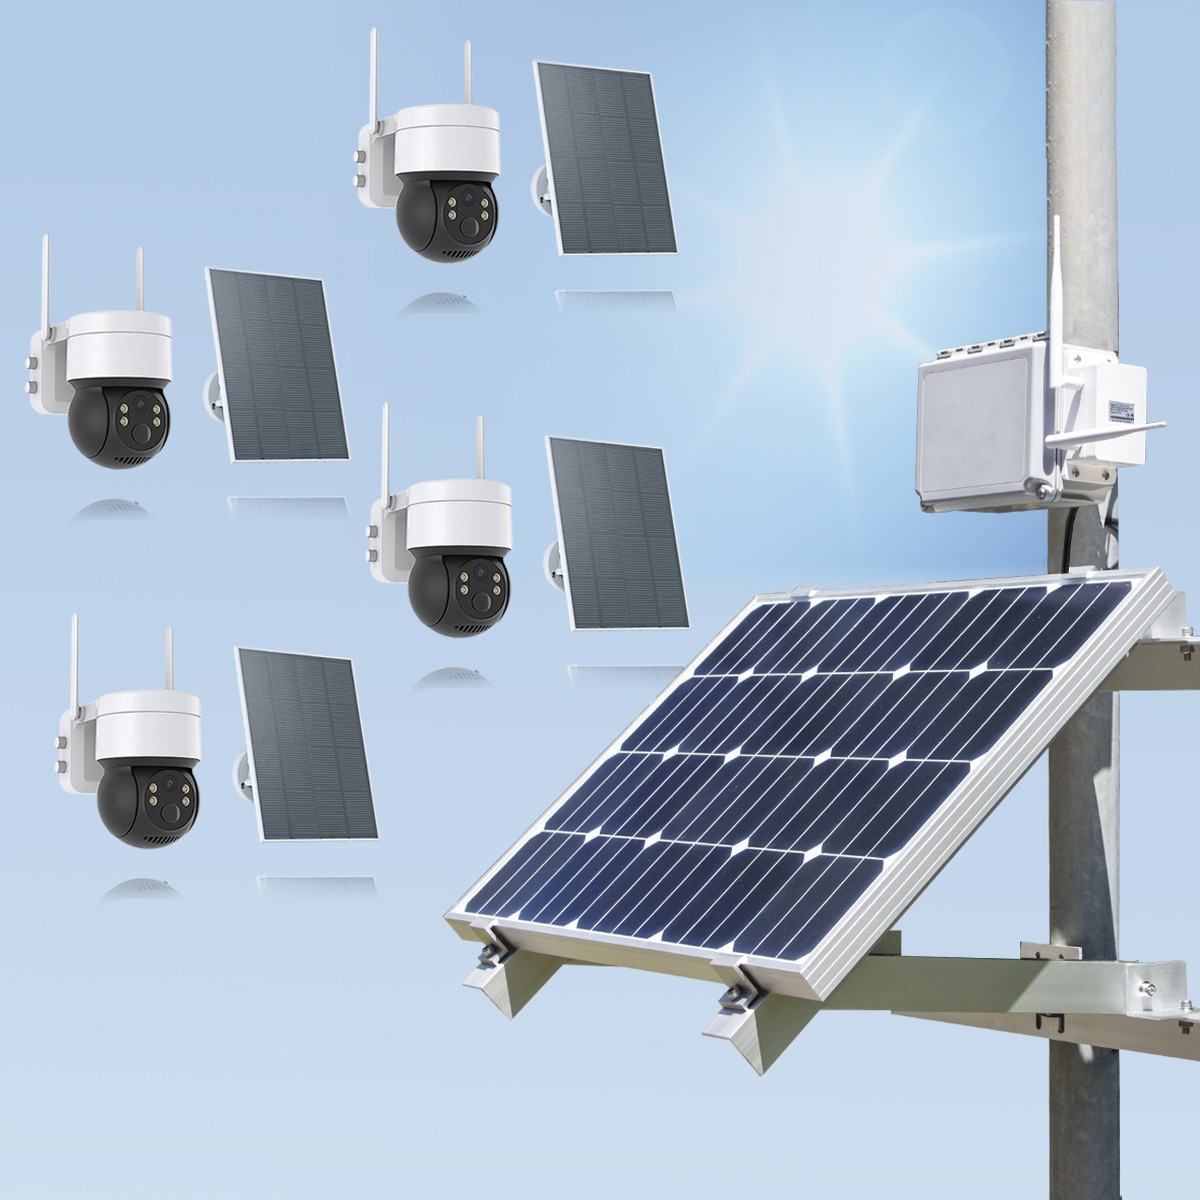 Kit videosurveillance 3G 4G autonome solaire waterproof avec 4 caméras solaires WIFI UHD 2K 4MP detection humaine accès à distance via ios android 128Go 